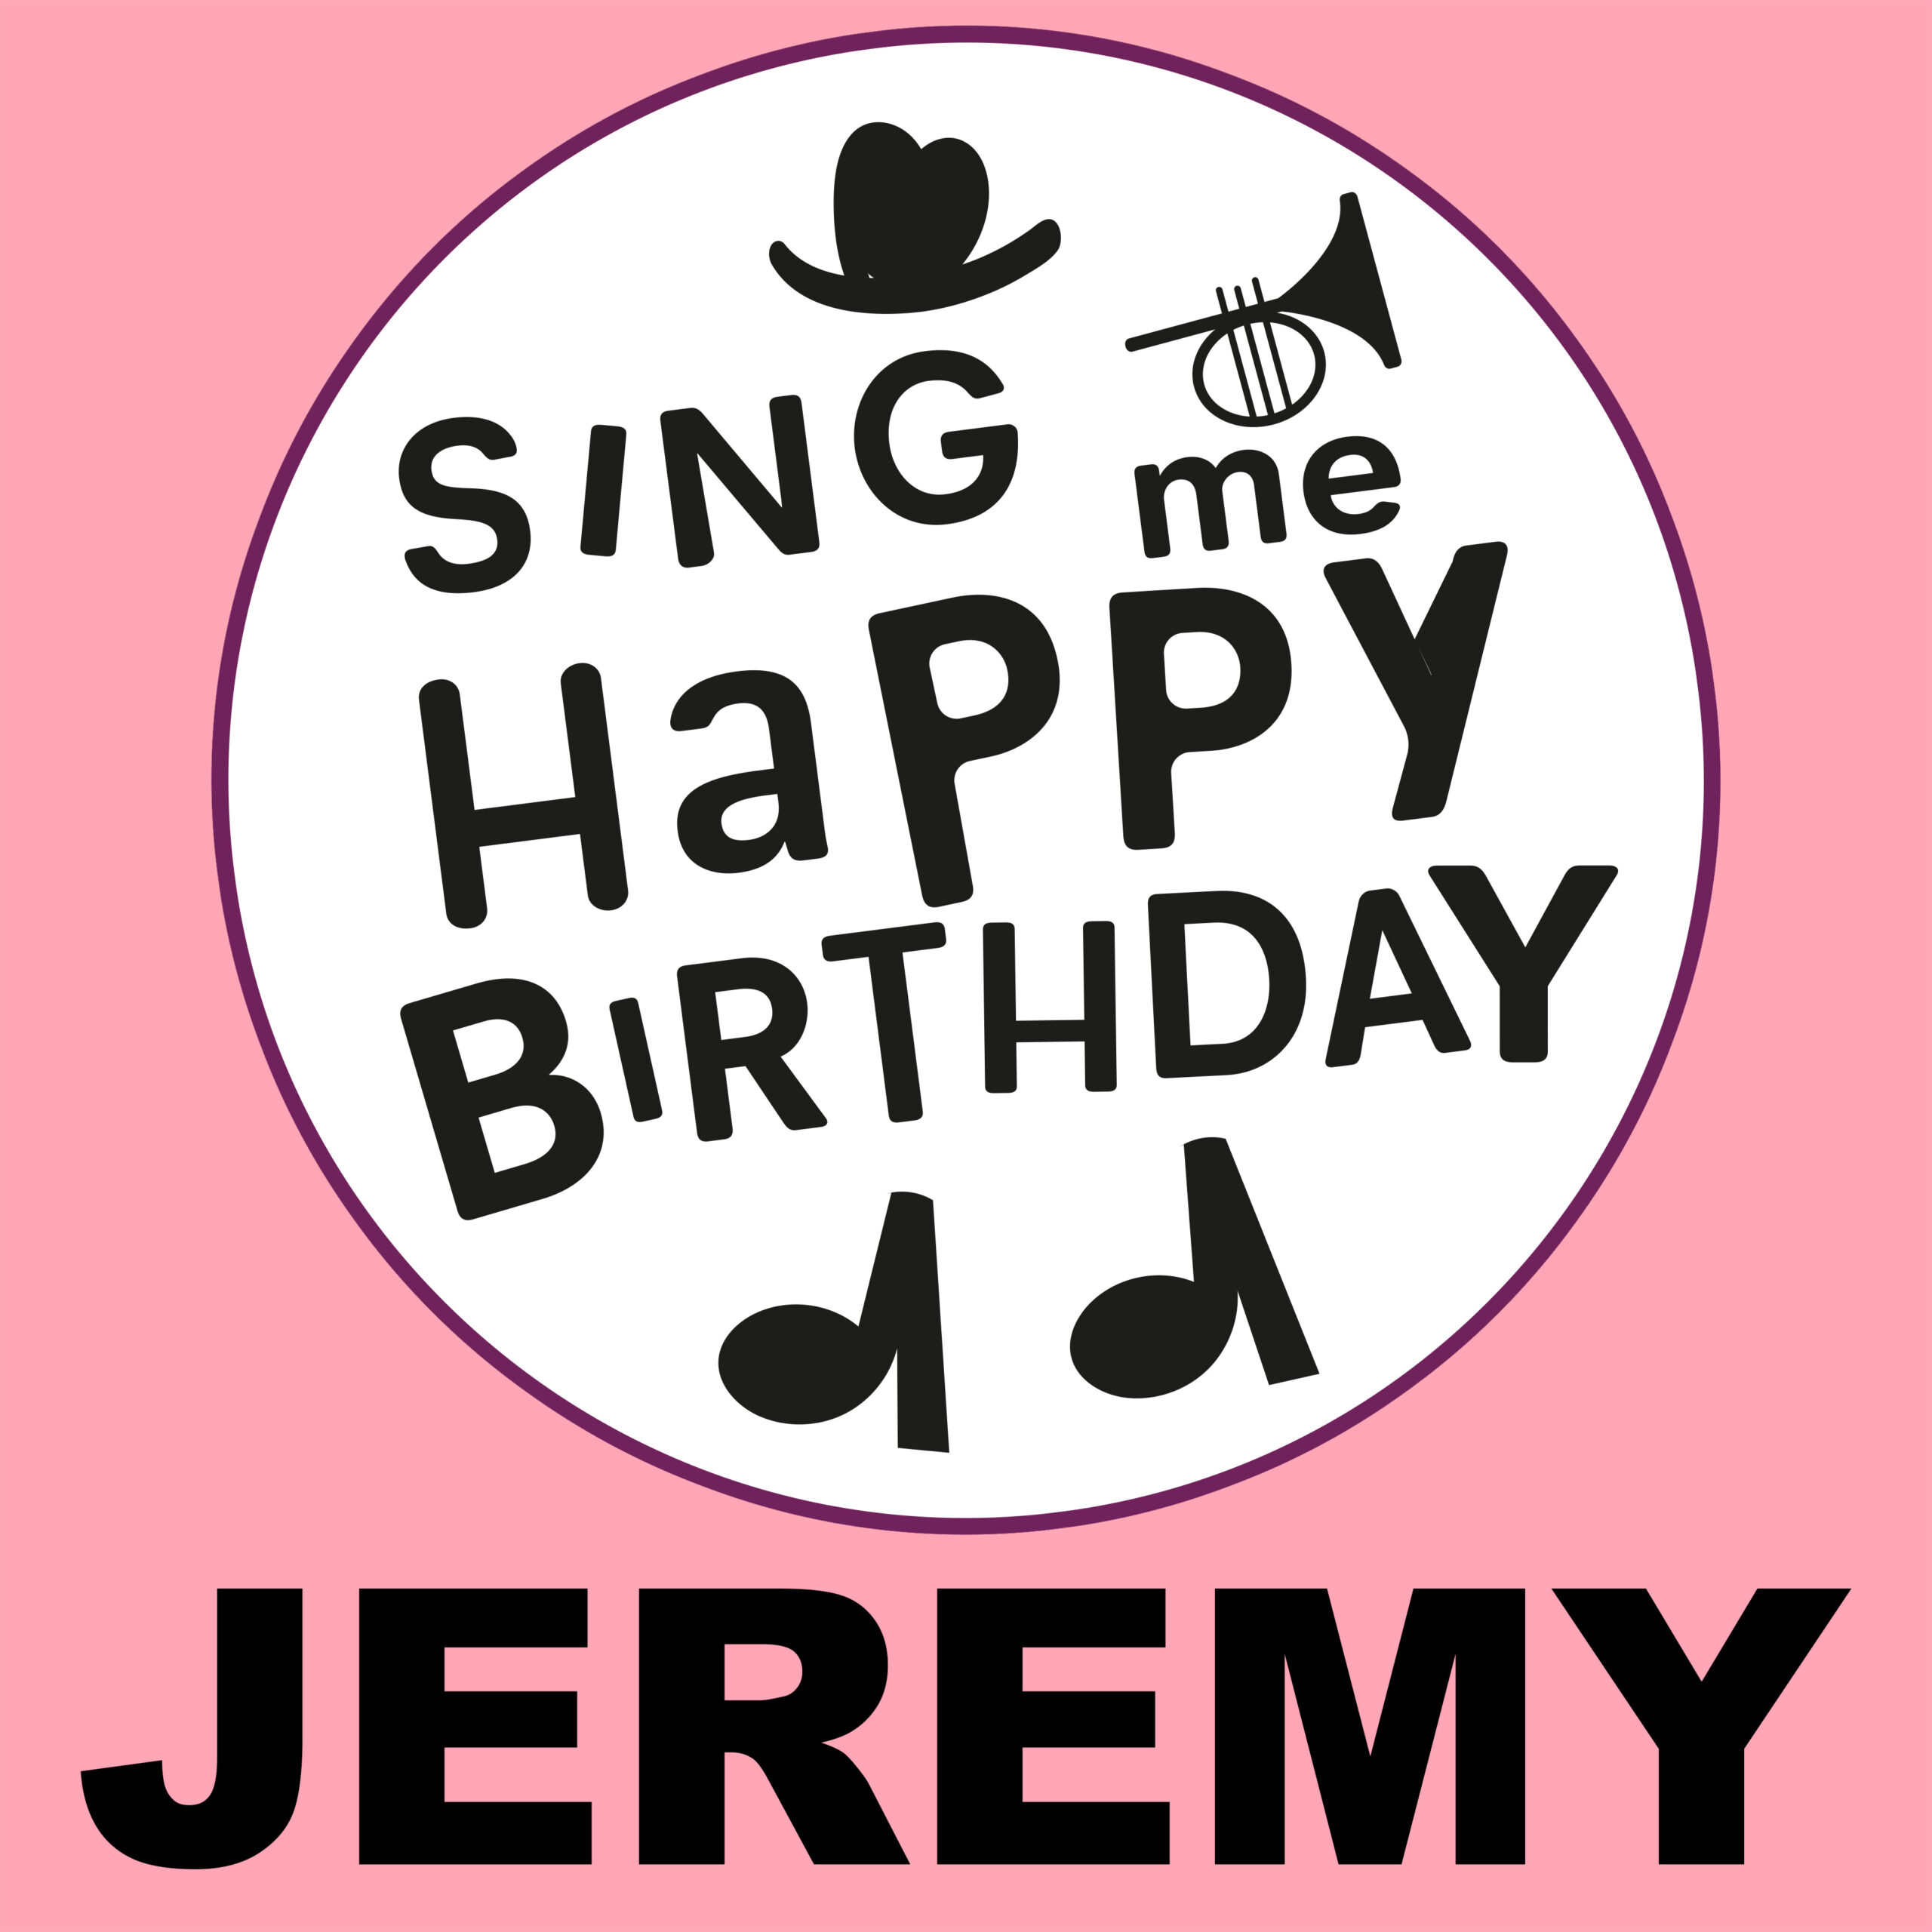 Happy Birthday Jeremy ⋆ Birthday Songs ⋆ Sing Me Happy Birthday